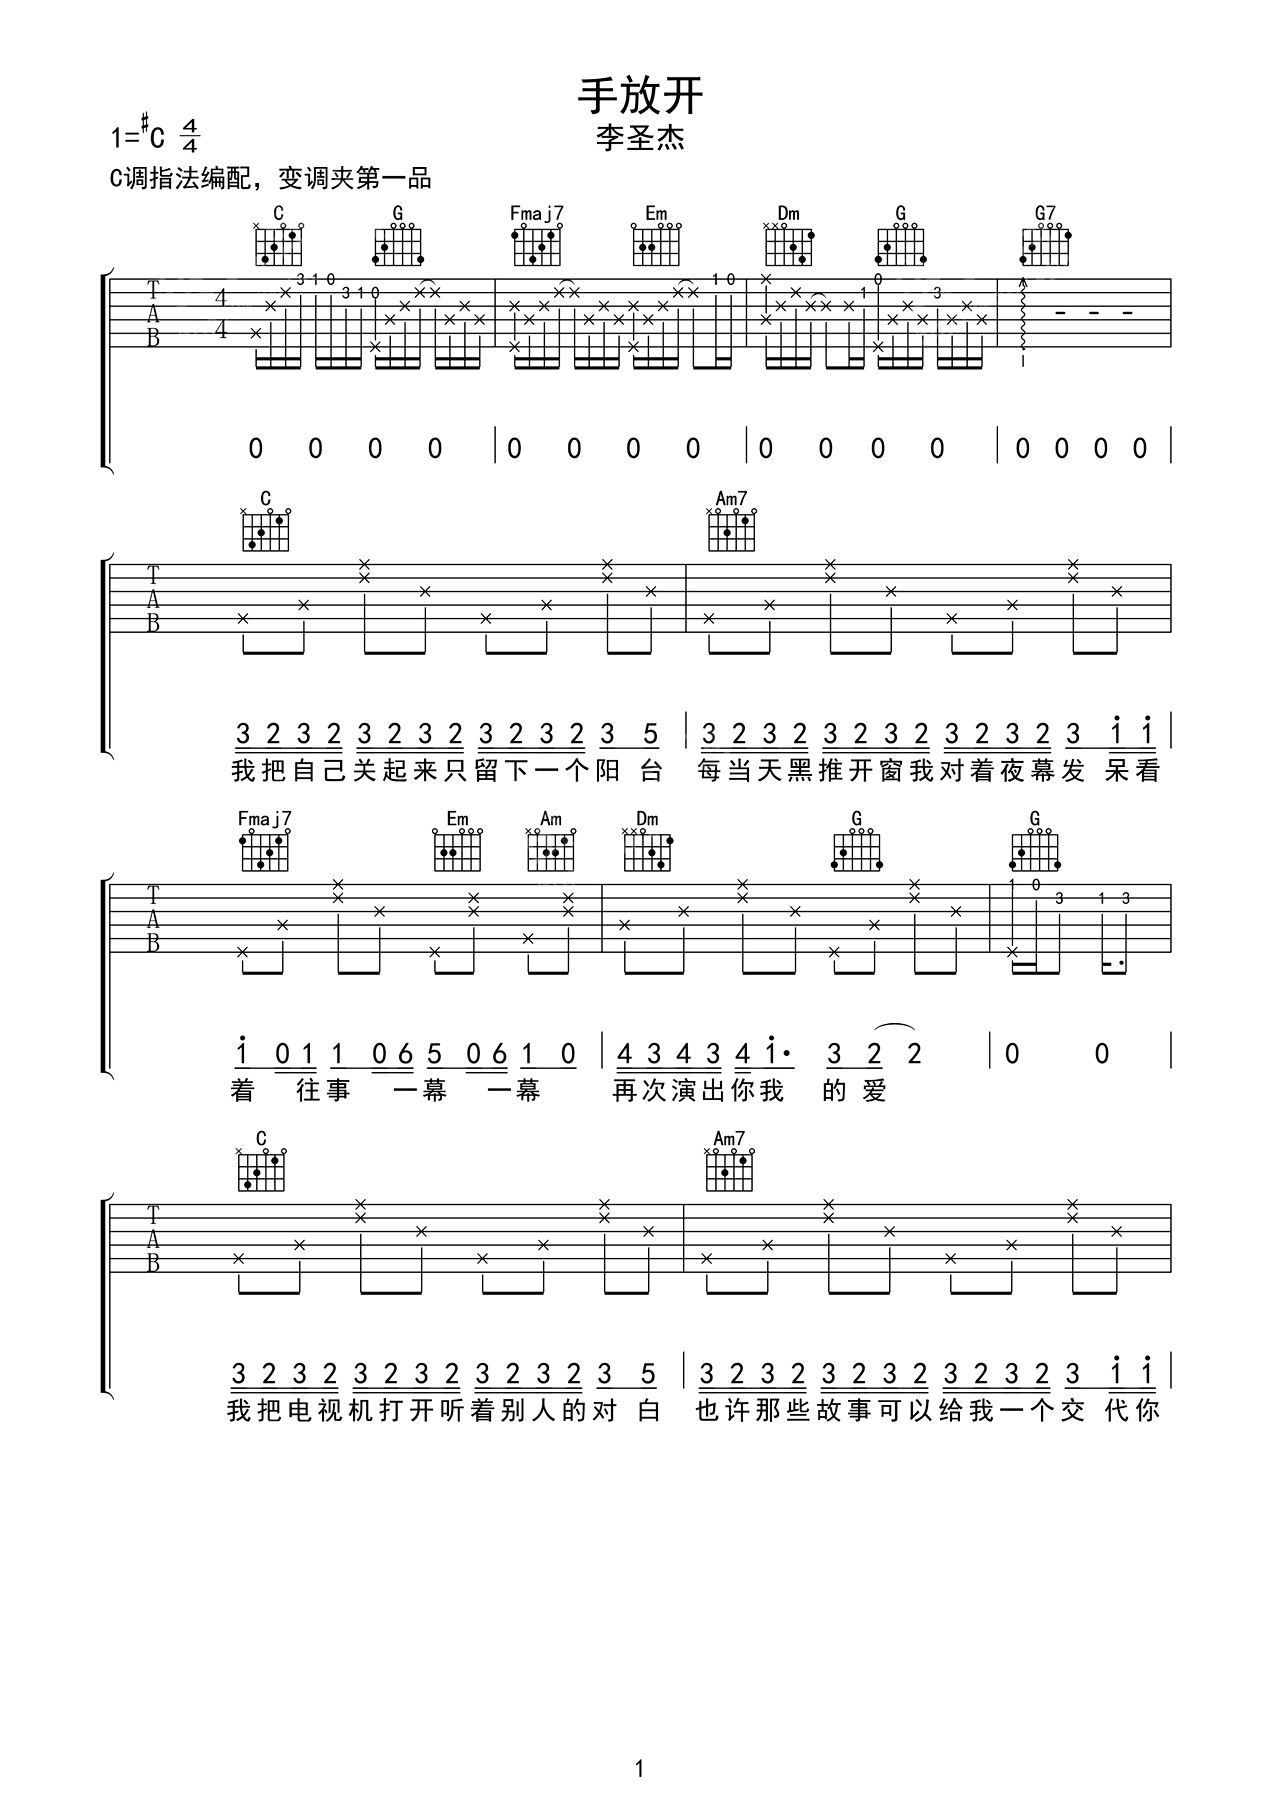 沙发上的白日梦（乐队总谱）吉他谱(PDF谱,乐队版,总谱,贝斯)_SoulFa 灵魂沙发